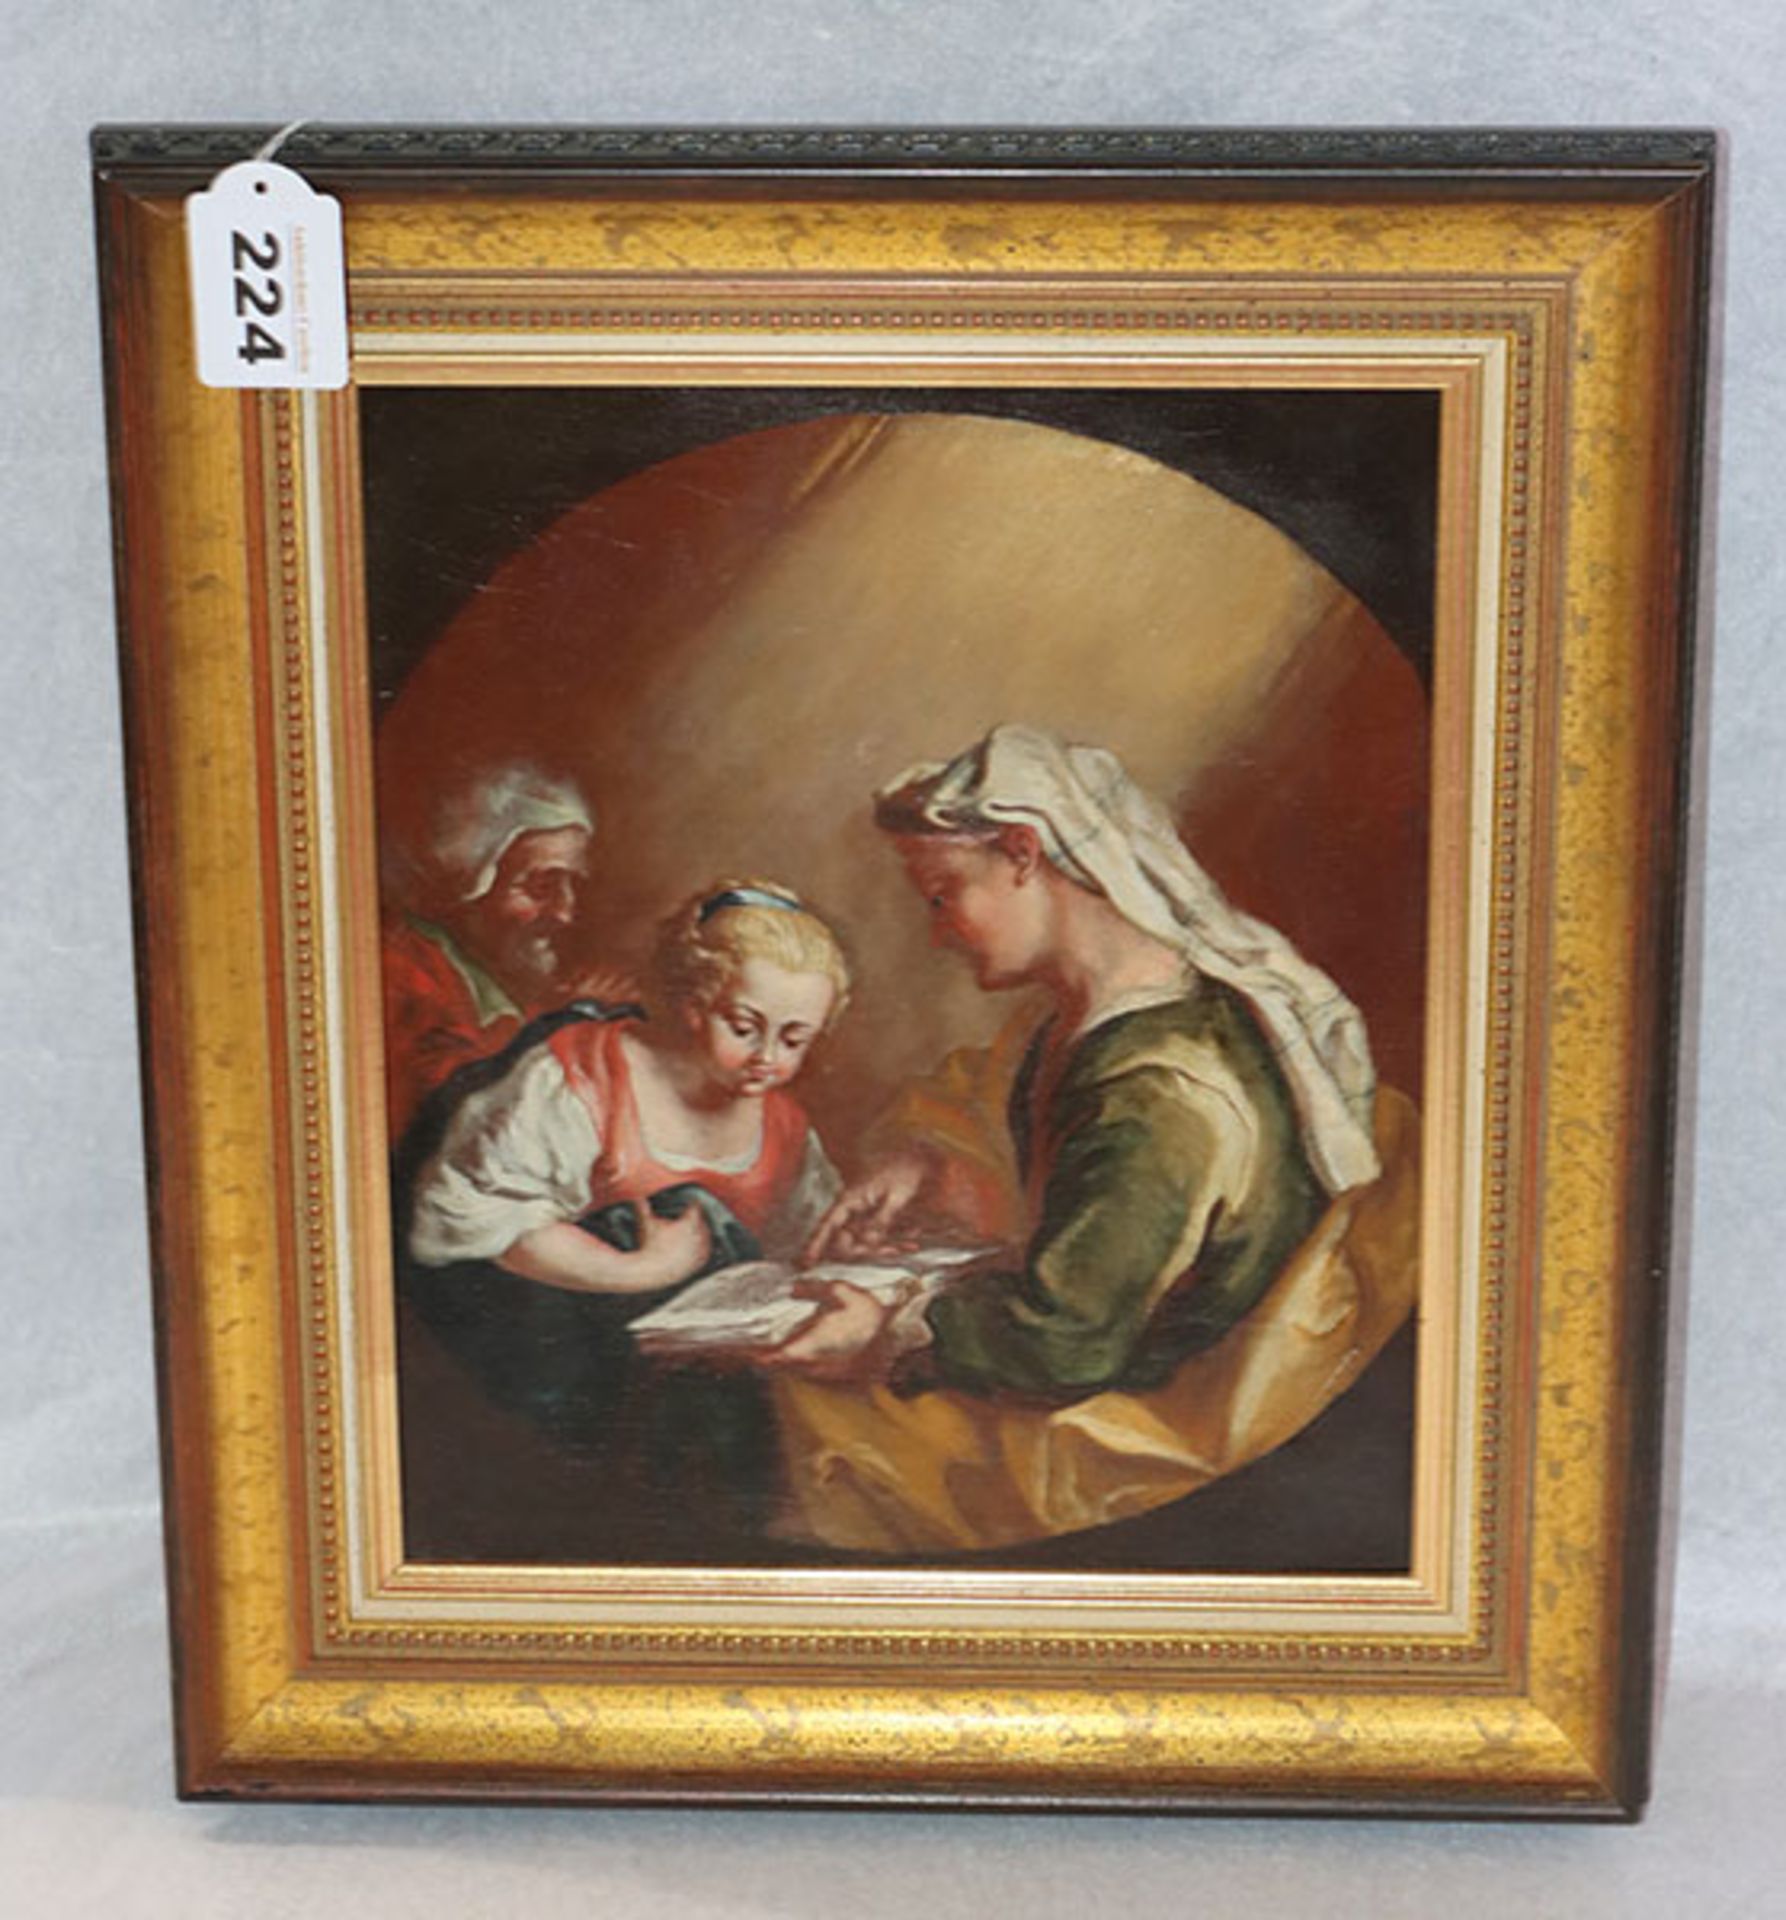 Gemälde ÖL/LW 'Heilige Anna lehrt Maria das Lesen', schön gerahmt, incl. Rahmen 38 cm x 34 cm